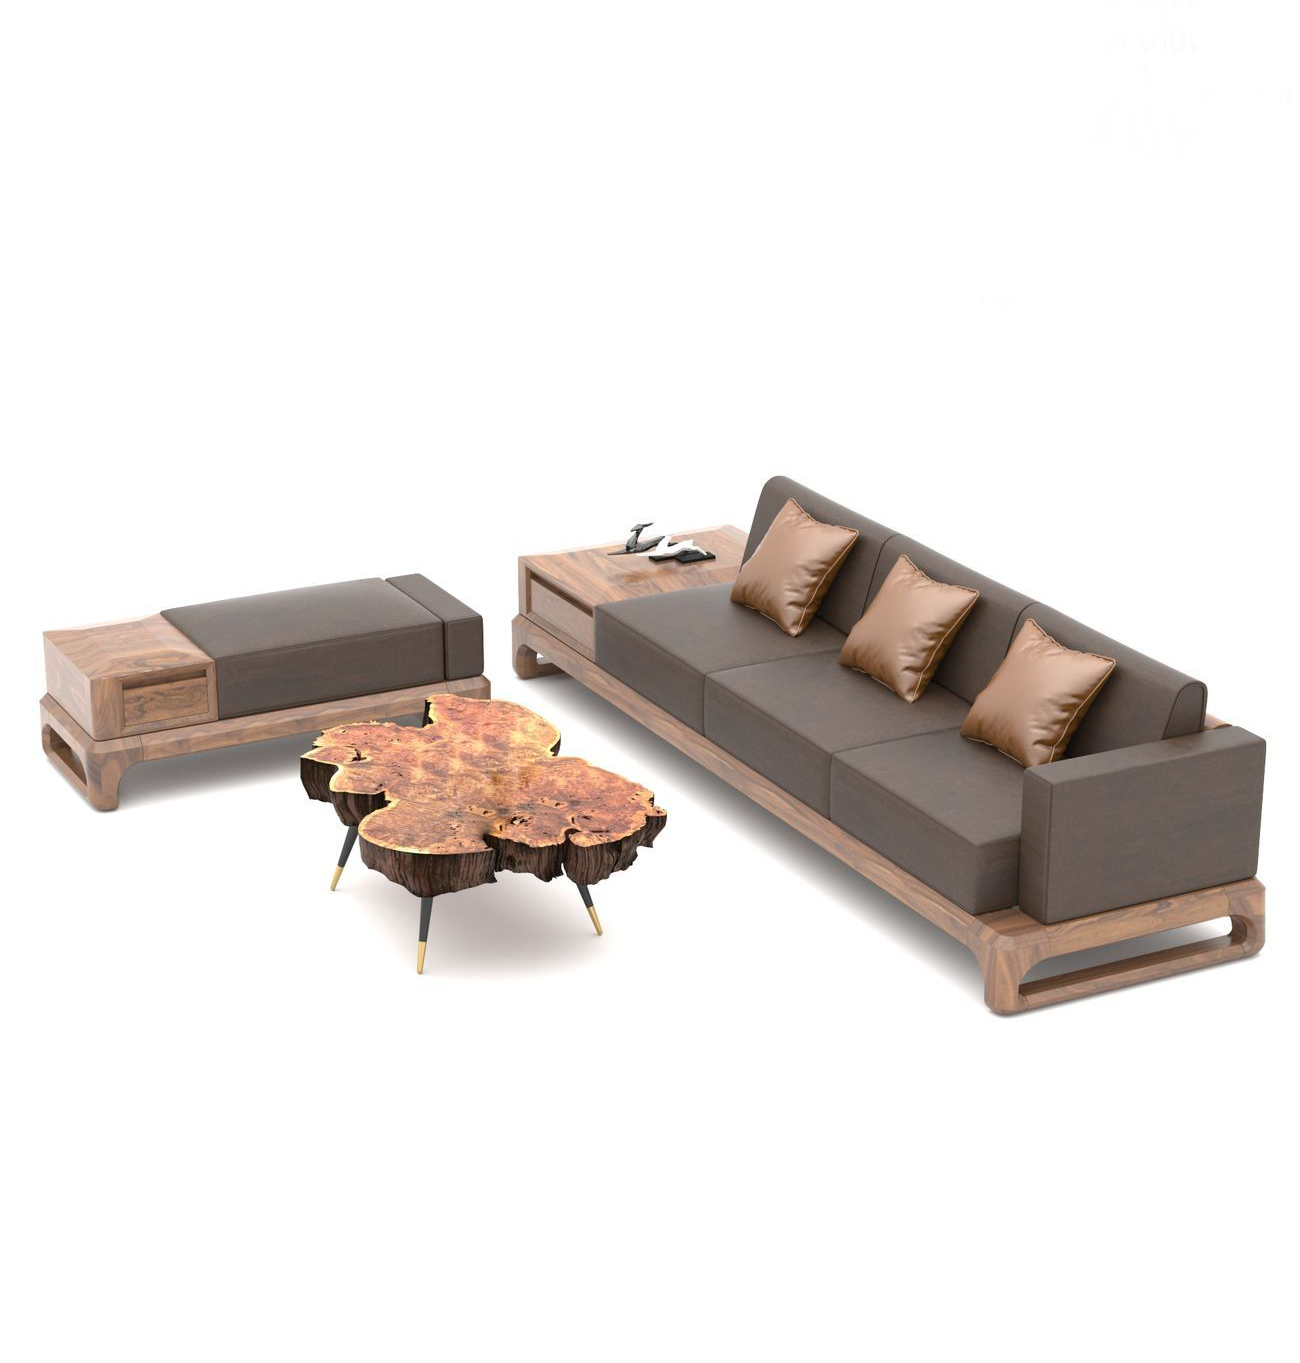 Những mẫu ghế sofa gỗ hiện đại đang được ưa chuông hiện nay 7